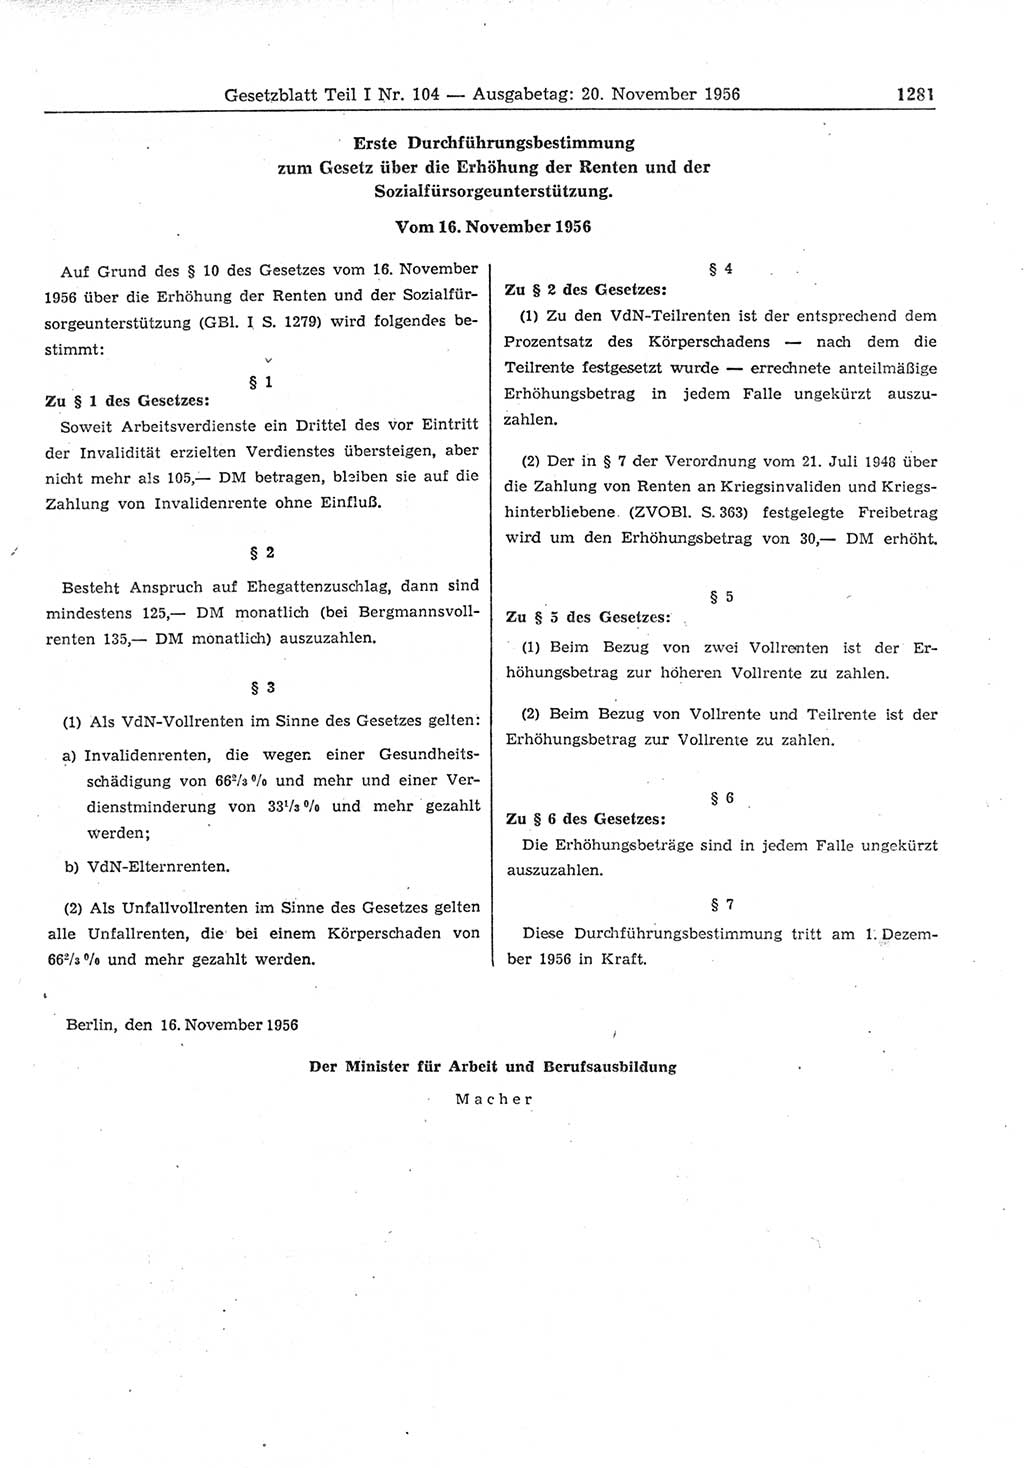 Gesetzblatt (GBl.) der Deutschen Demokratischen Republik (DDR) Teil Ⅰ 1956, Seite 1281 (GBl. DDR Ⅰ 1956, S. 1281)